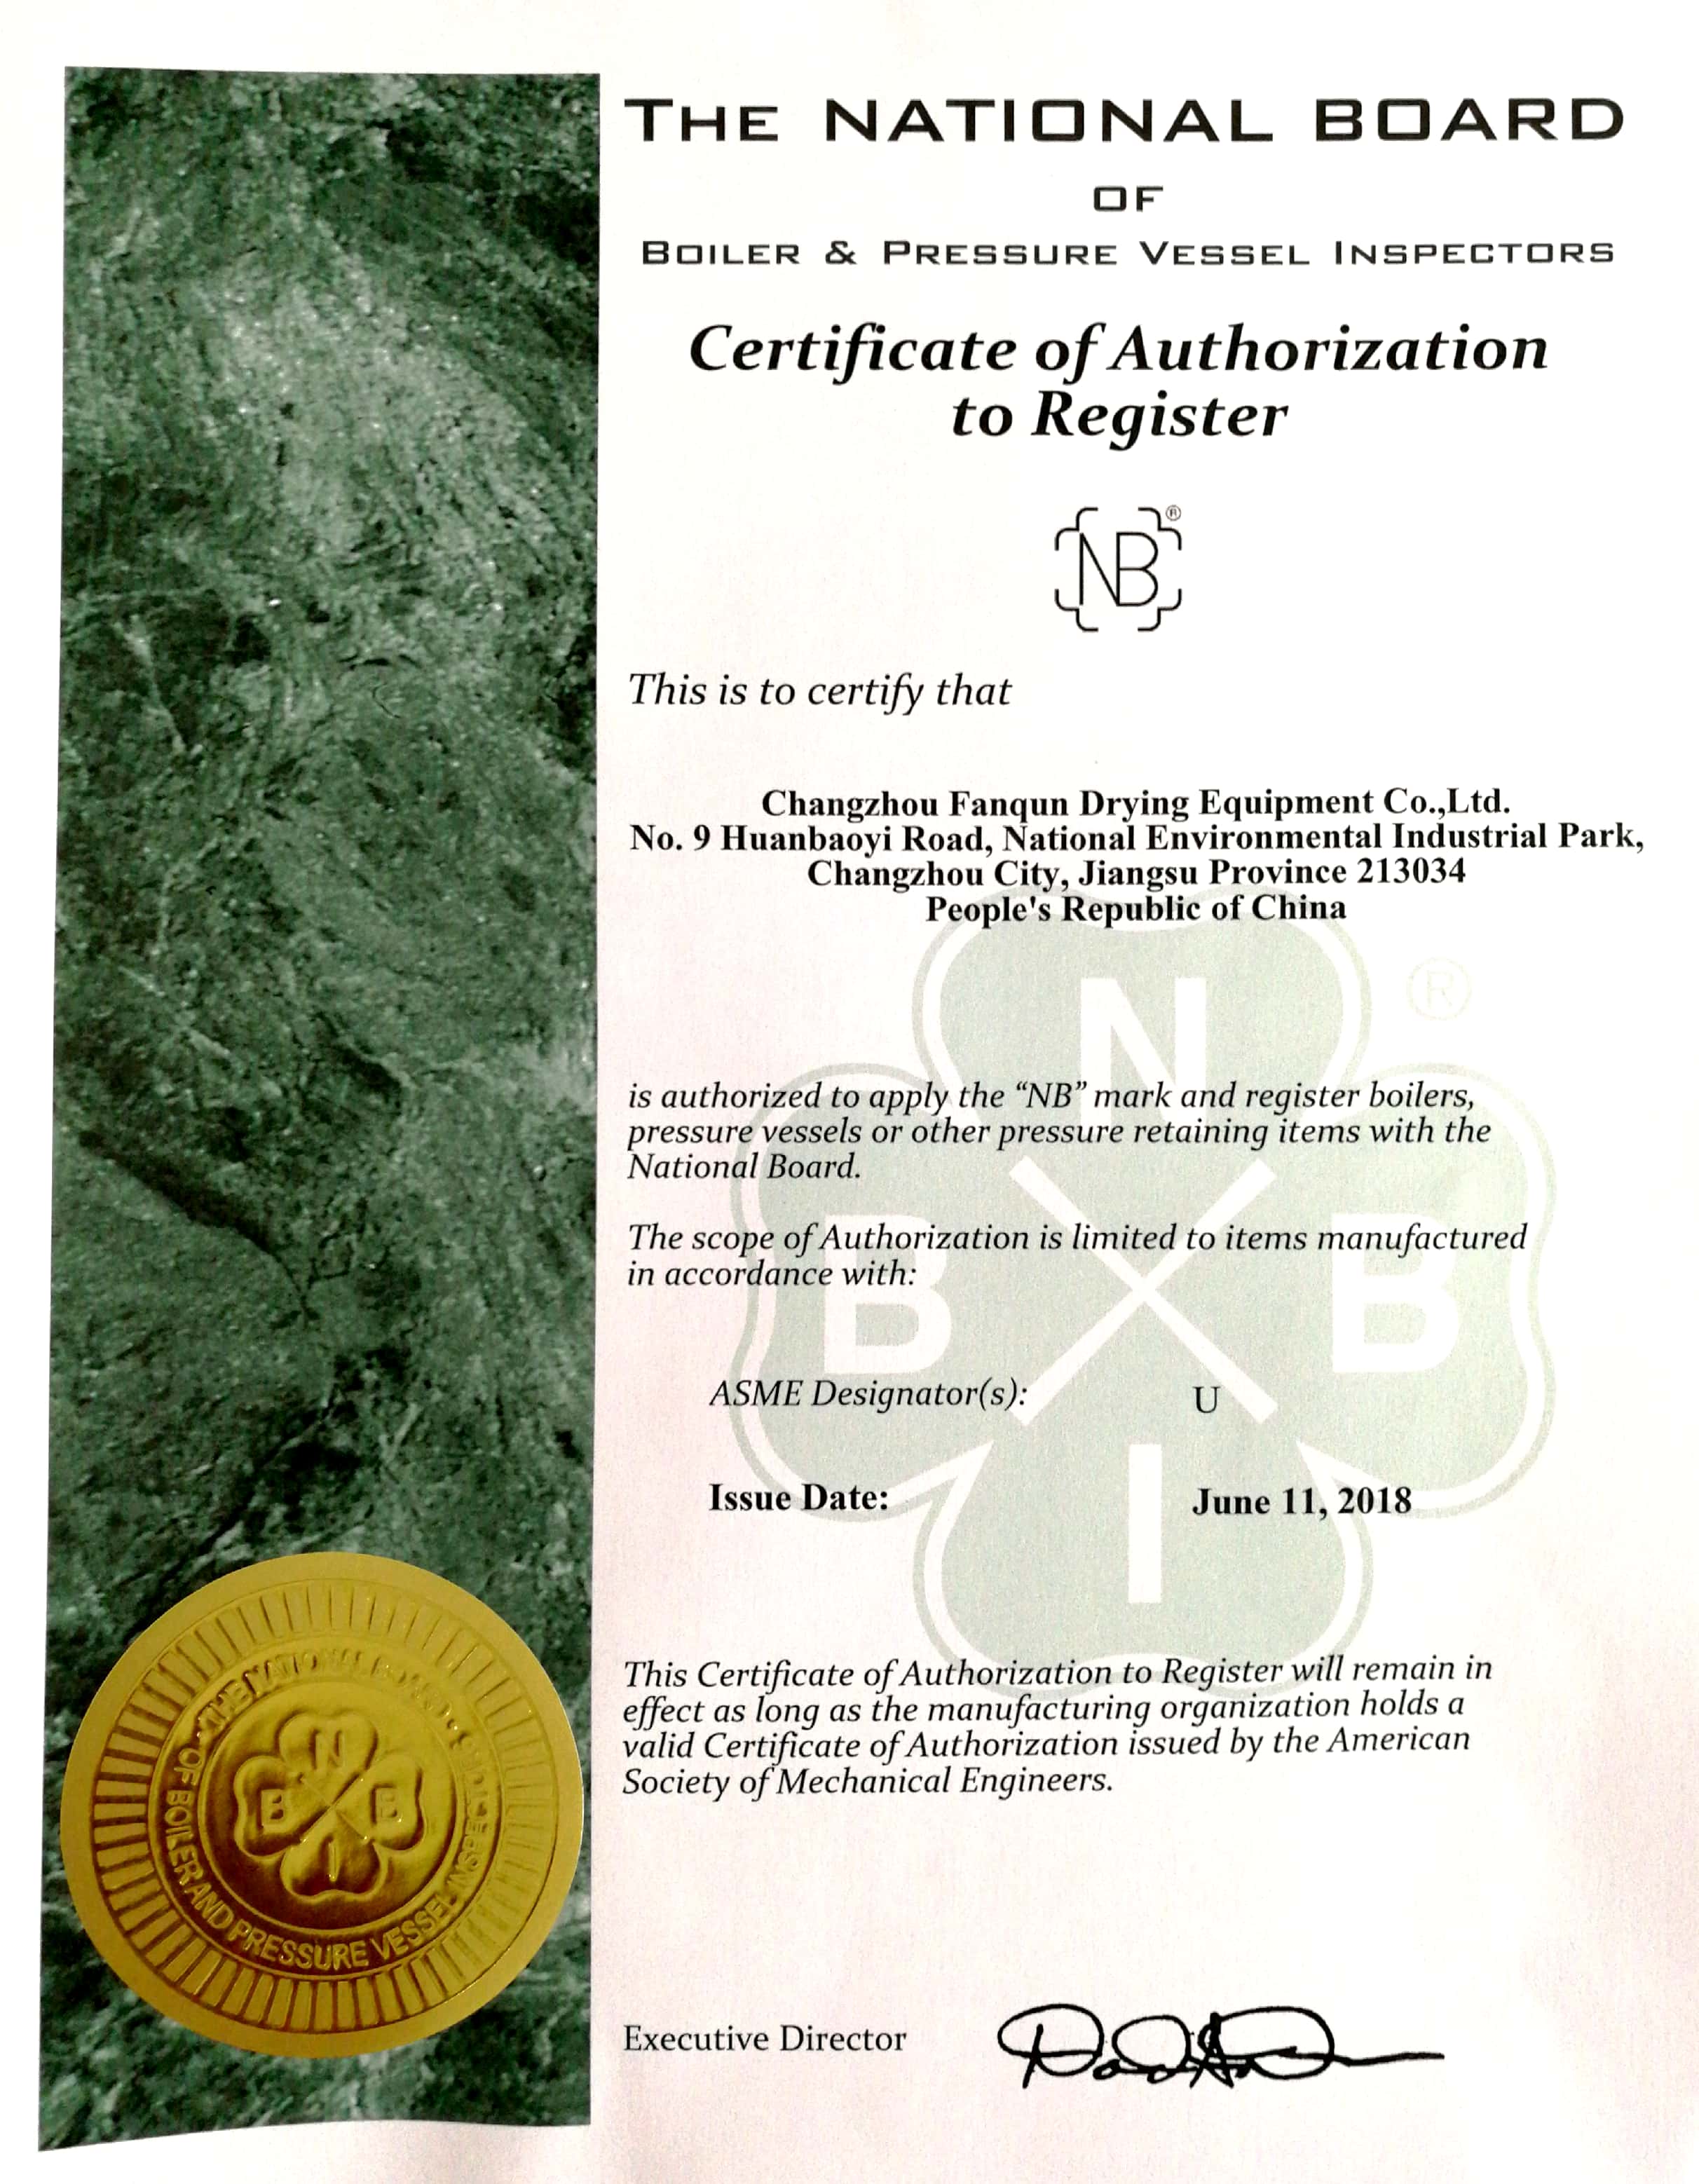 常州范群干燥设备有限公司获得ASME U 和 ASME NB 证书